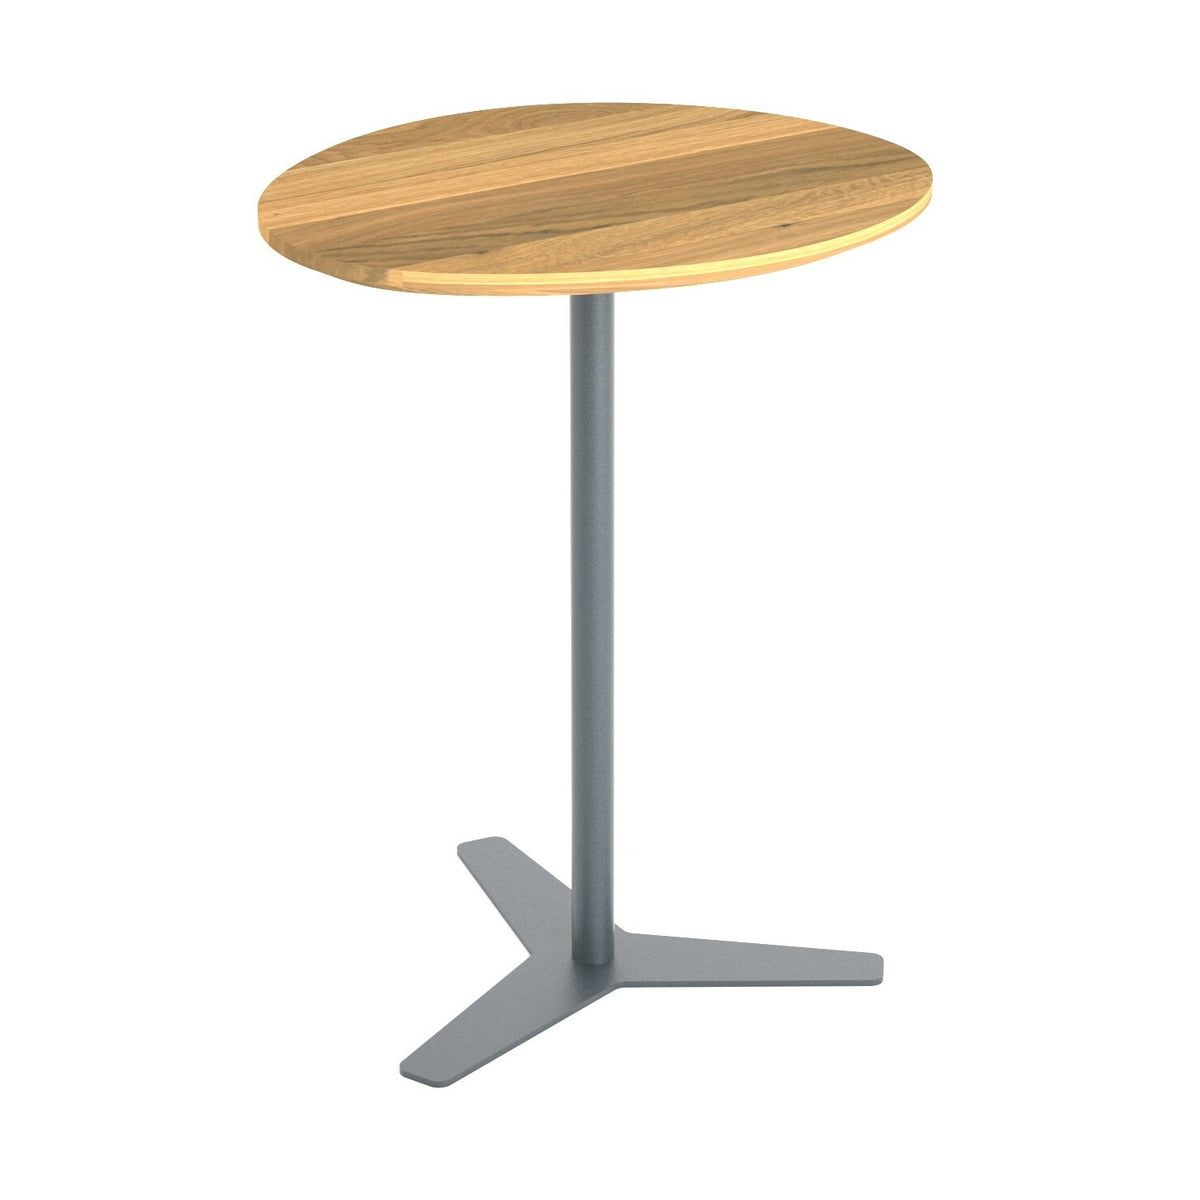 Přístavný stolek Leunat